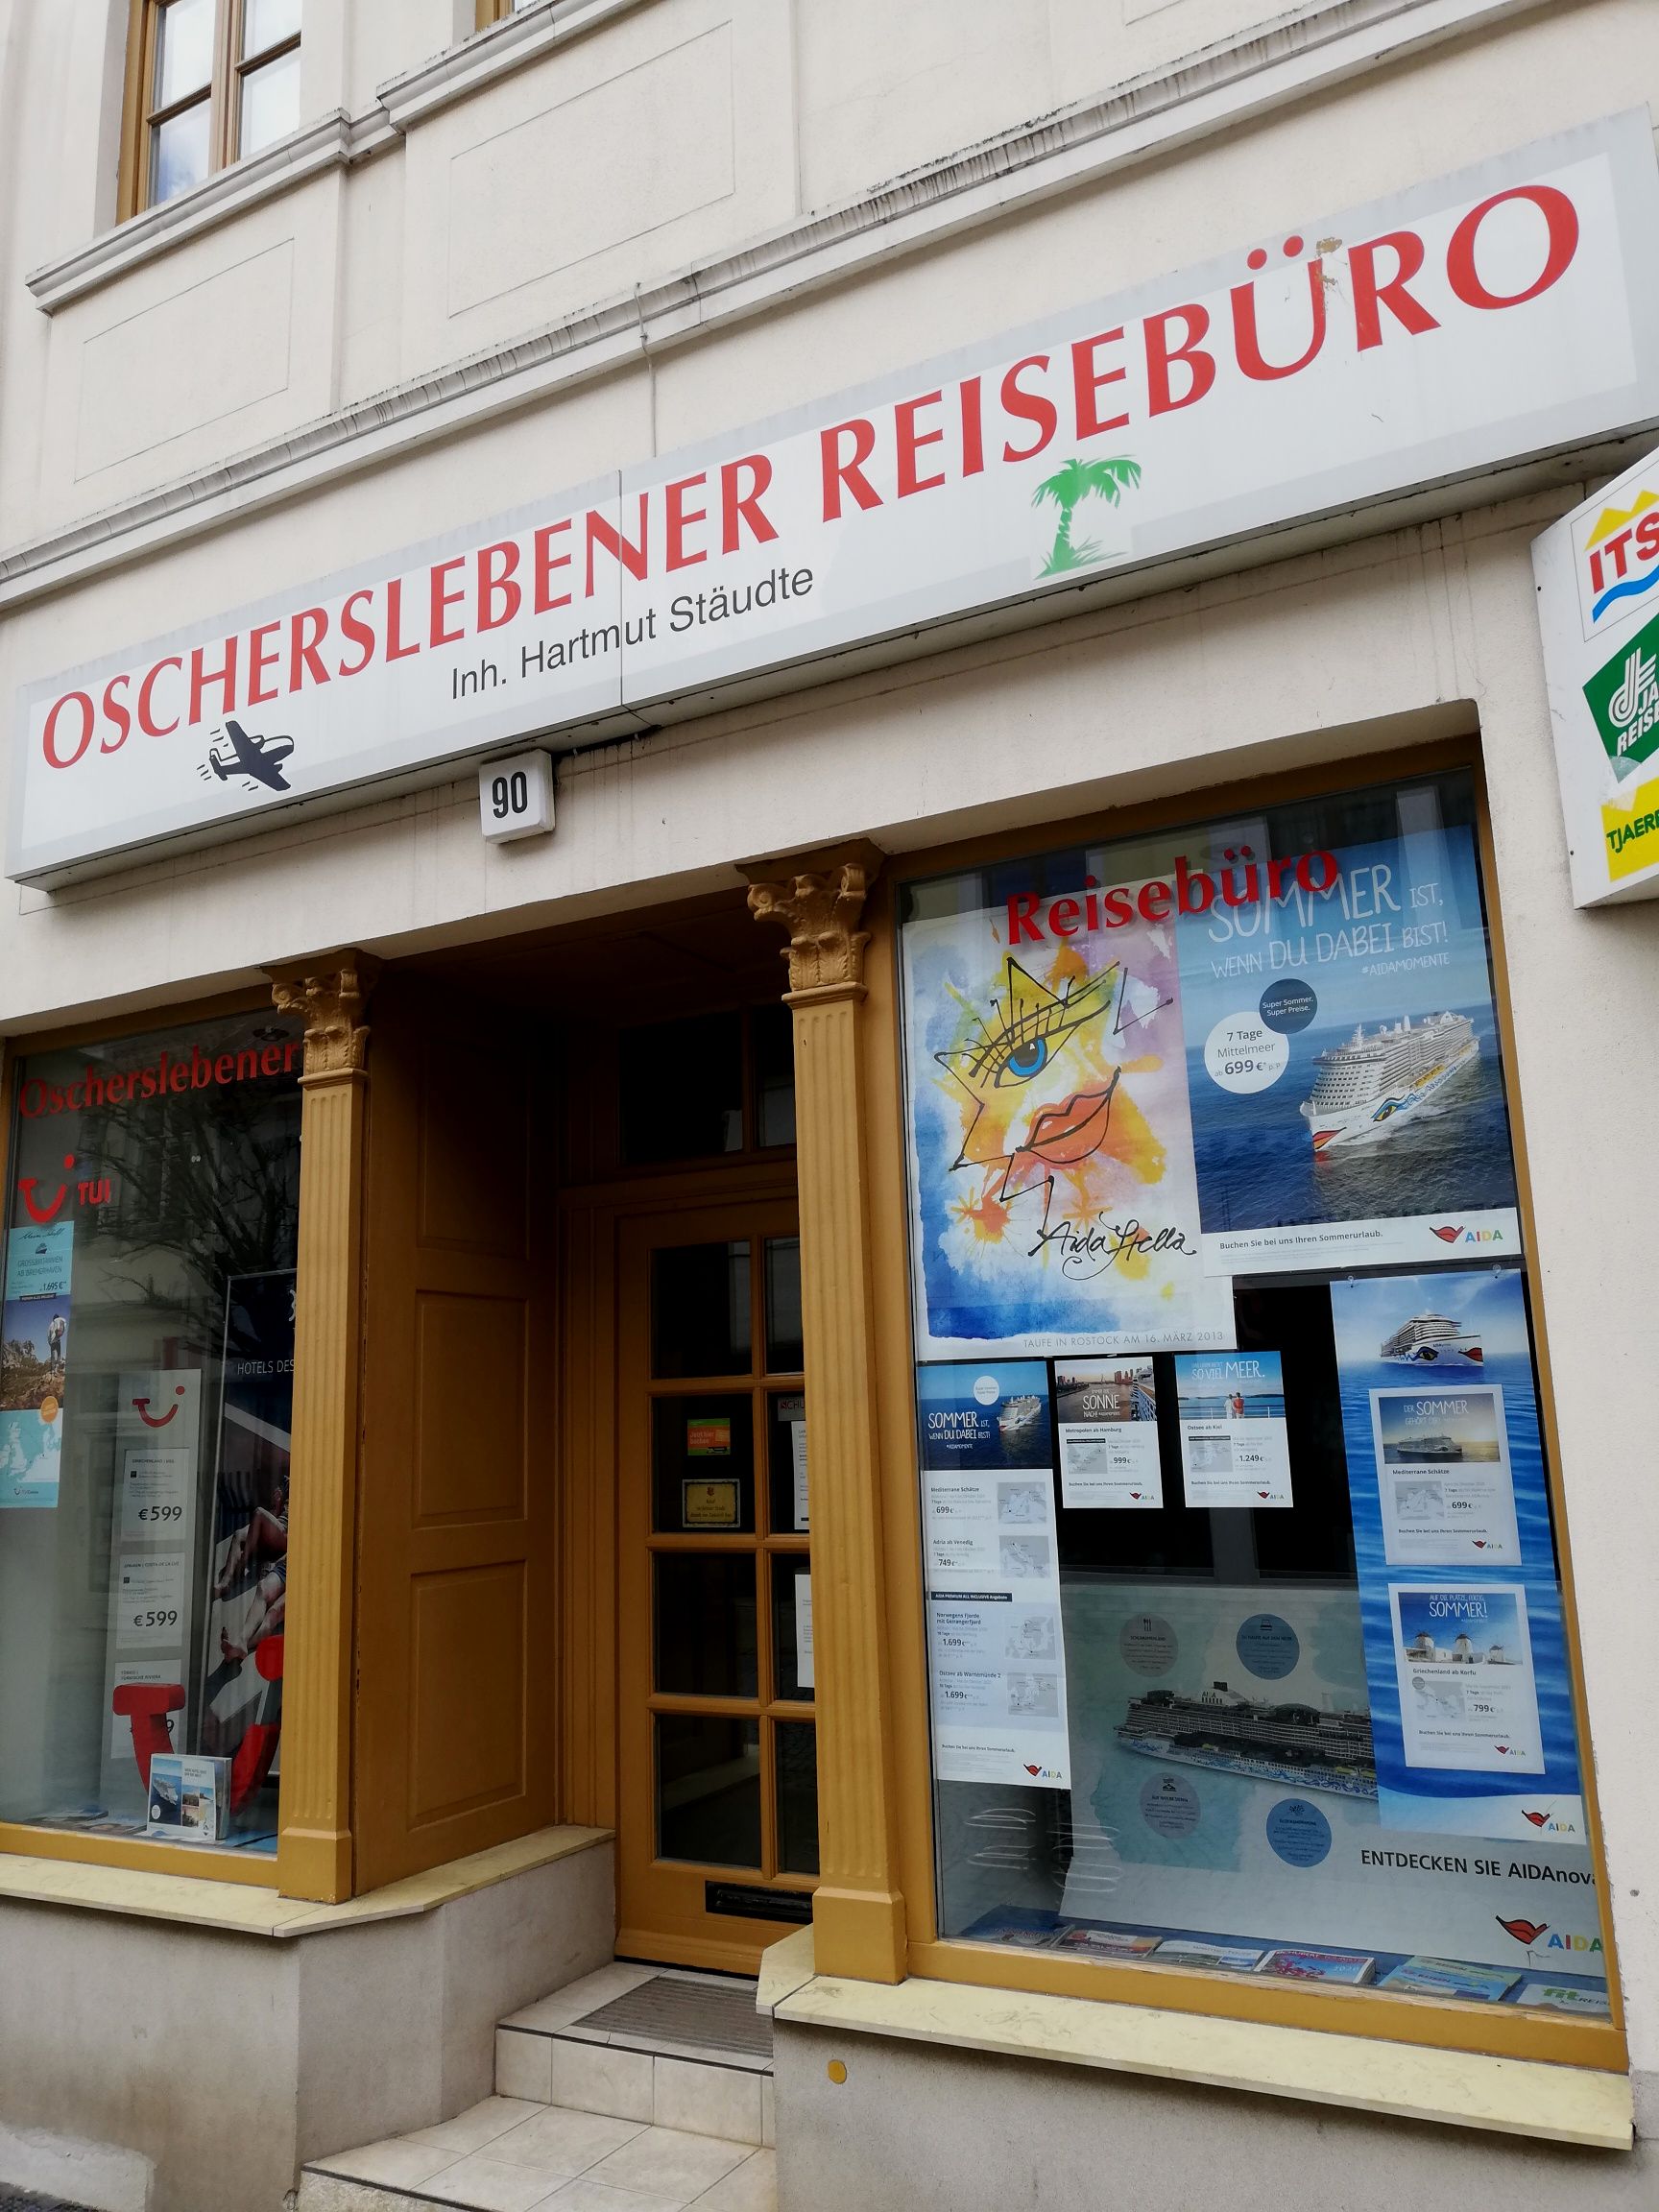 Oscherslebener Reisebüro